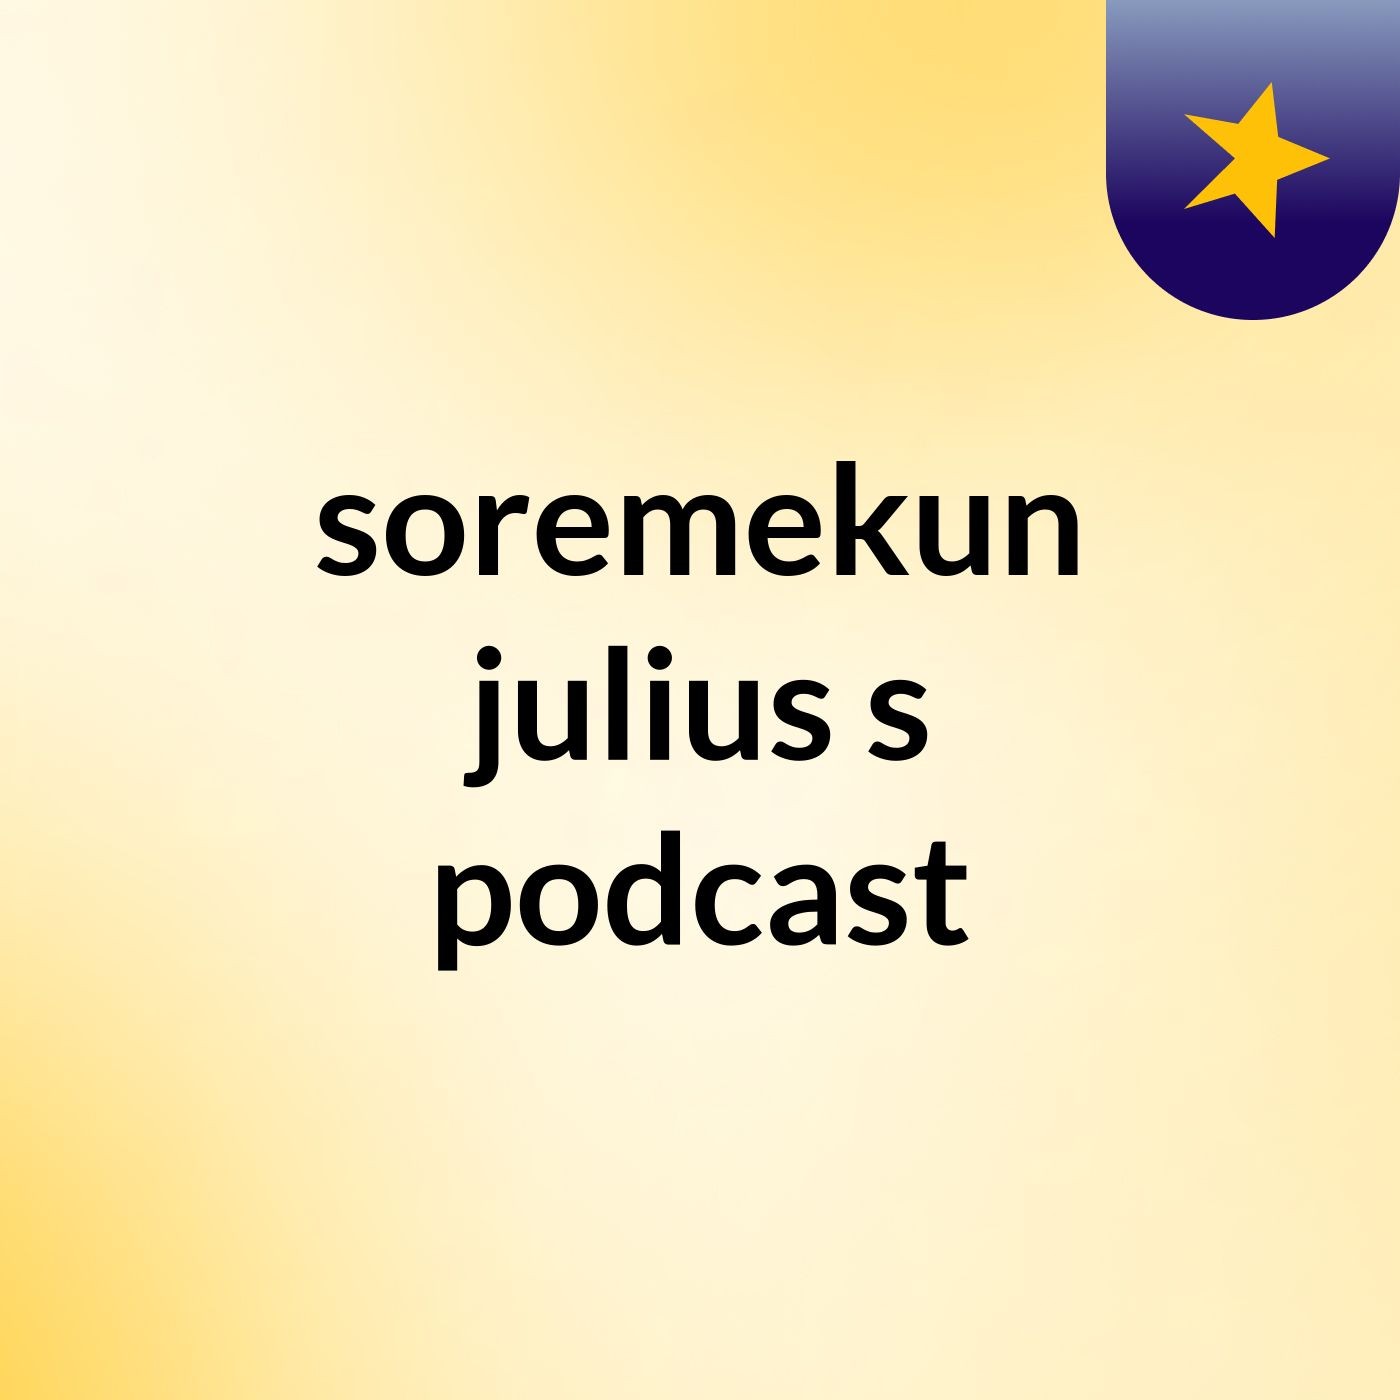 soremekun julius's podcast